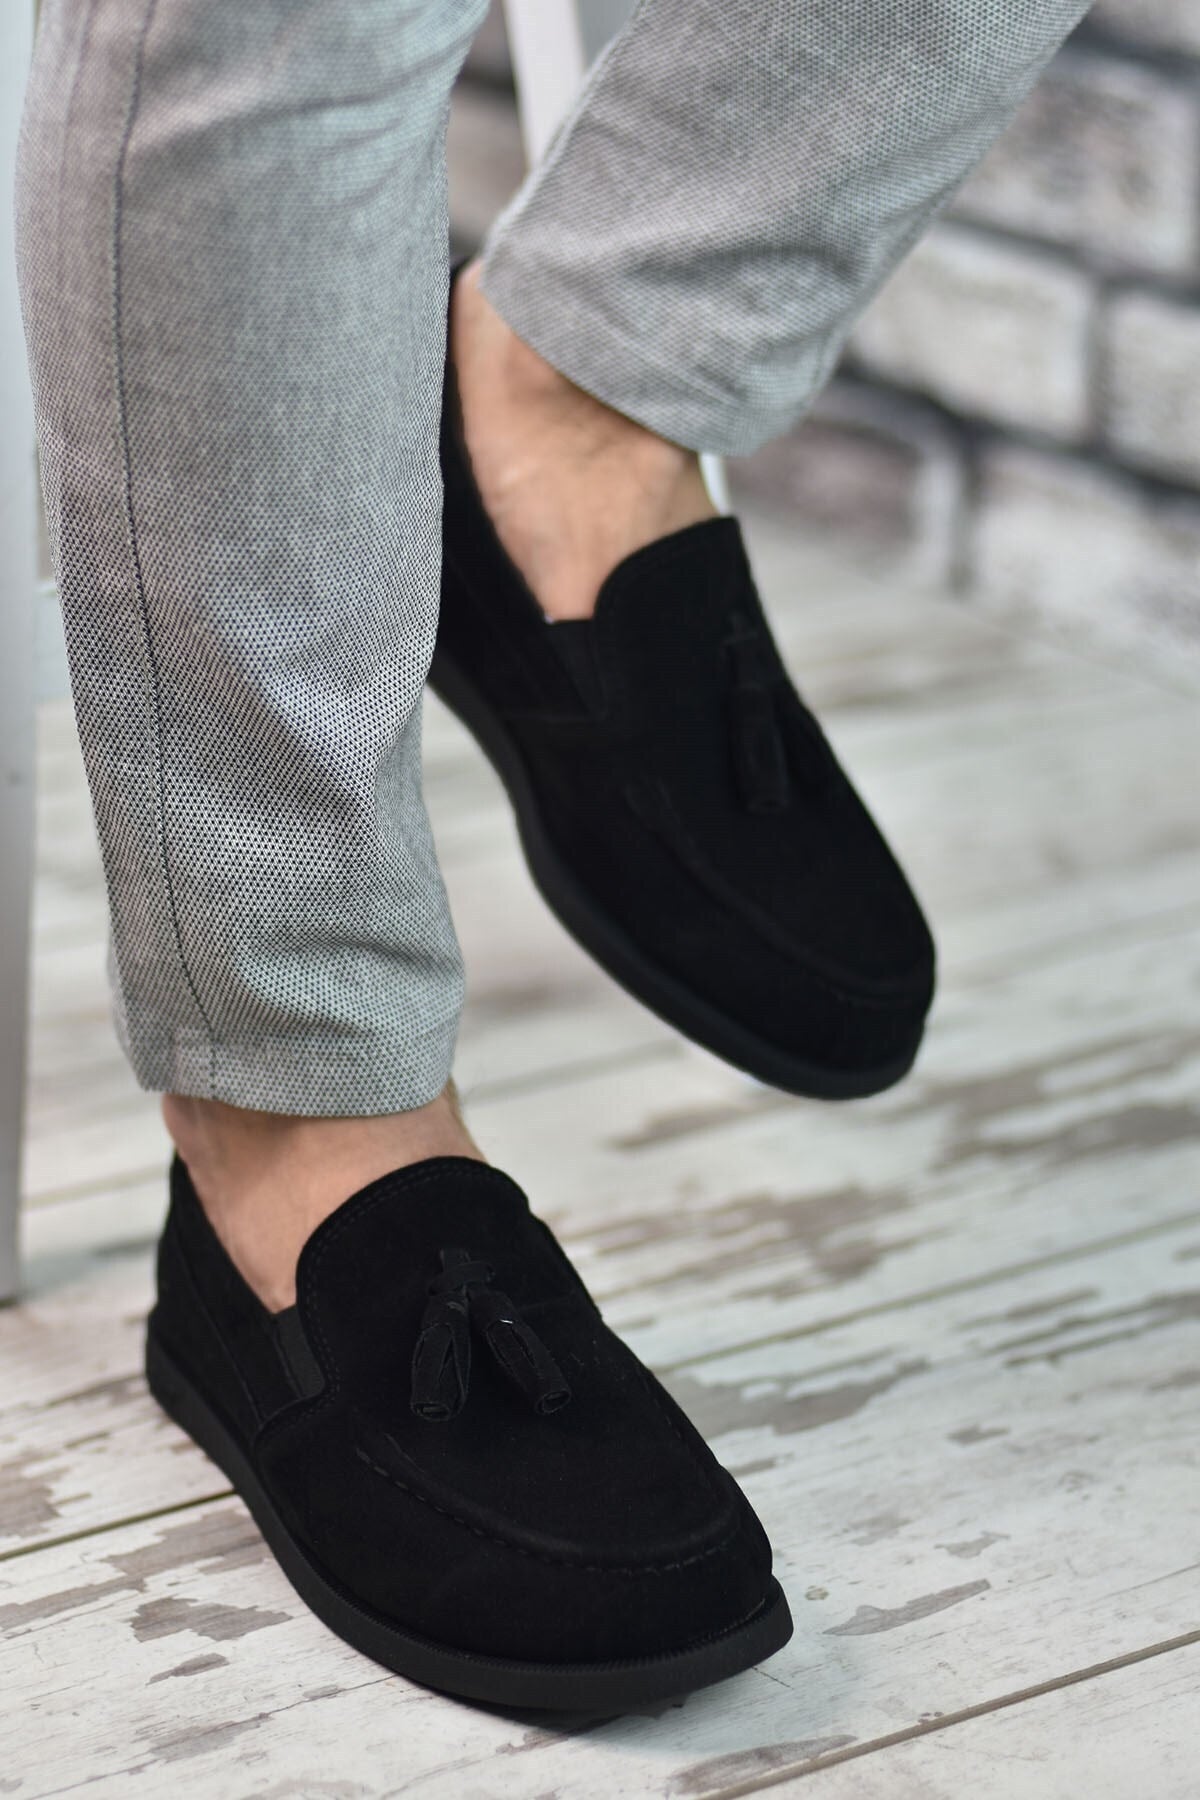 Black Suede Men's Casual Shoes